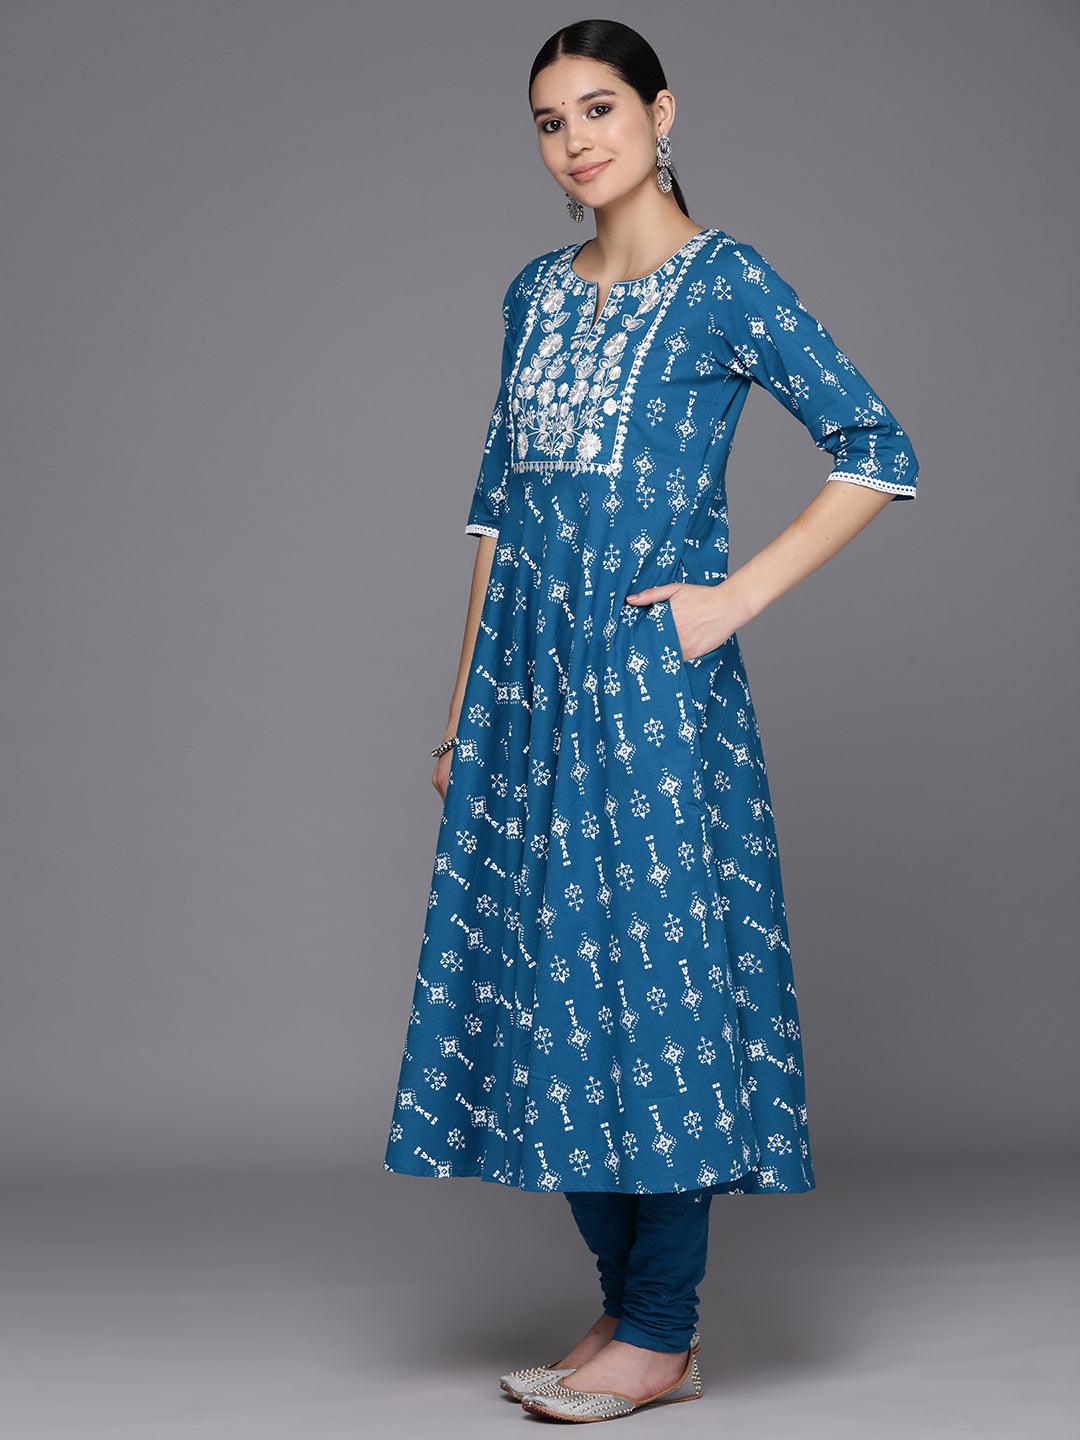 Blue Yoke Design Cotton Anarkali Kurta With Churidar & Dupatta